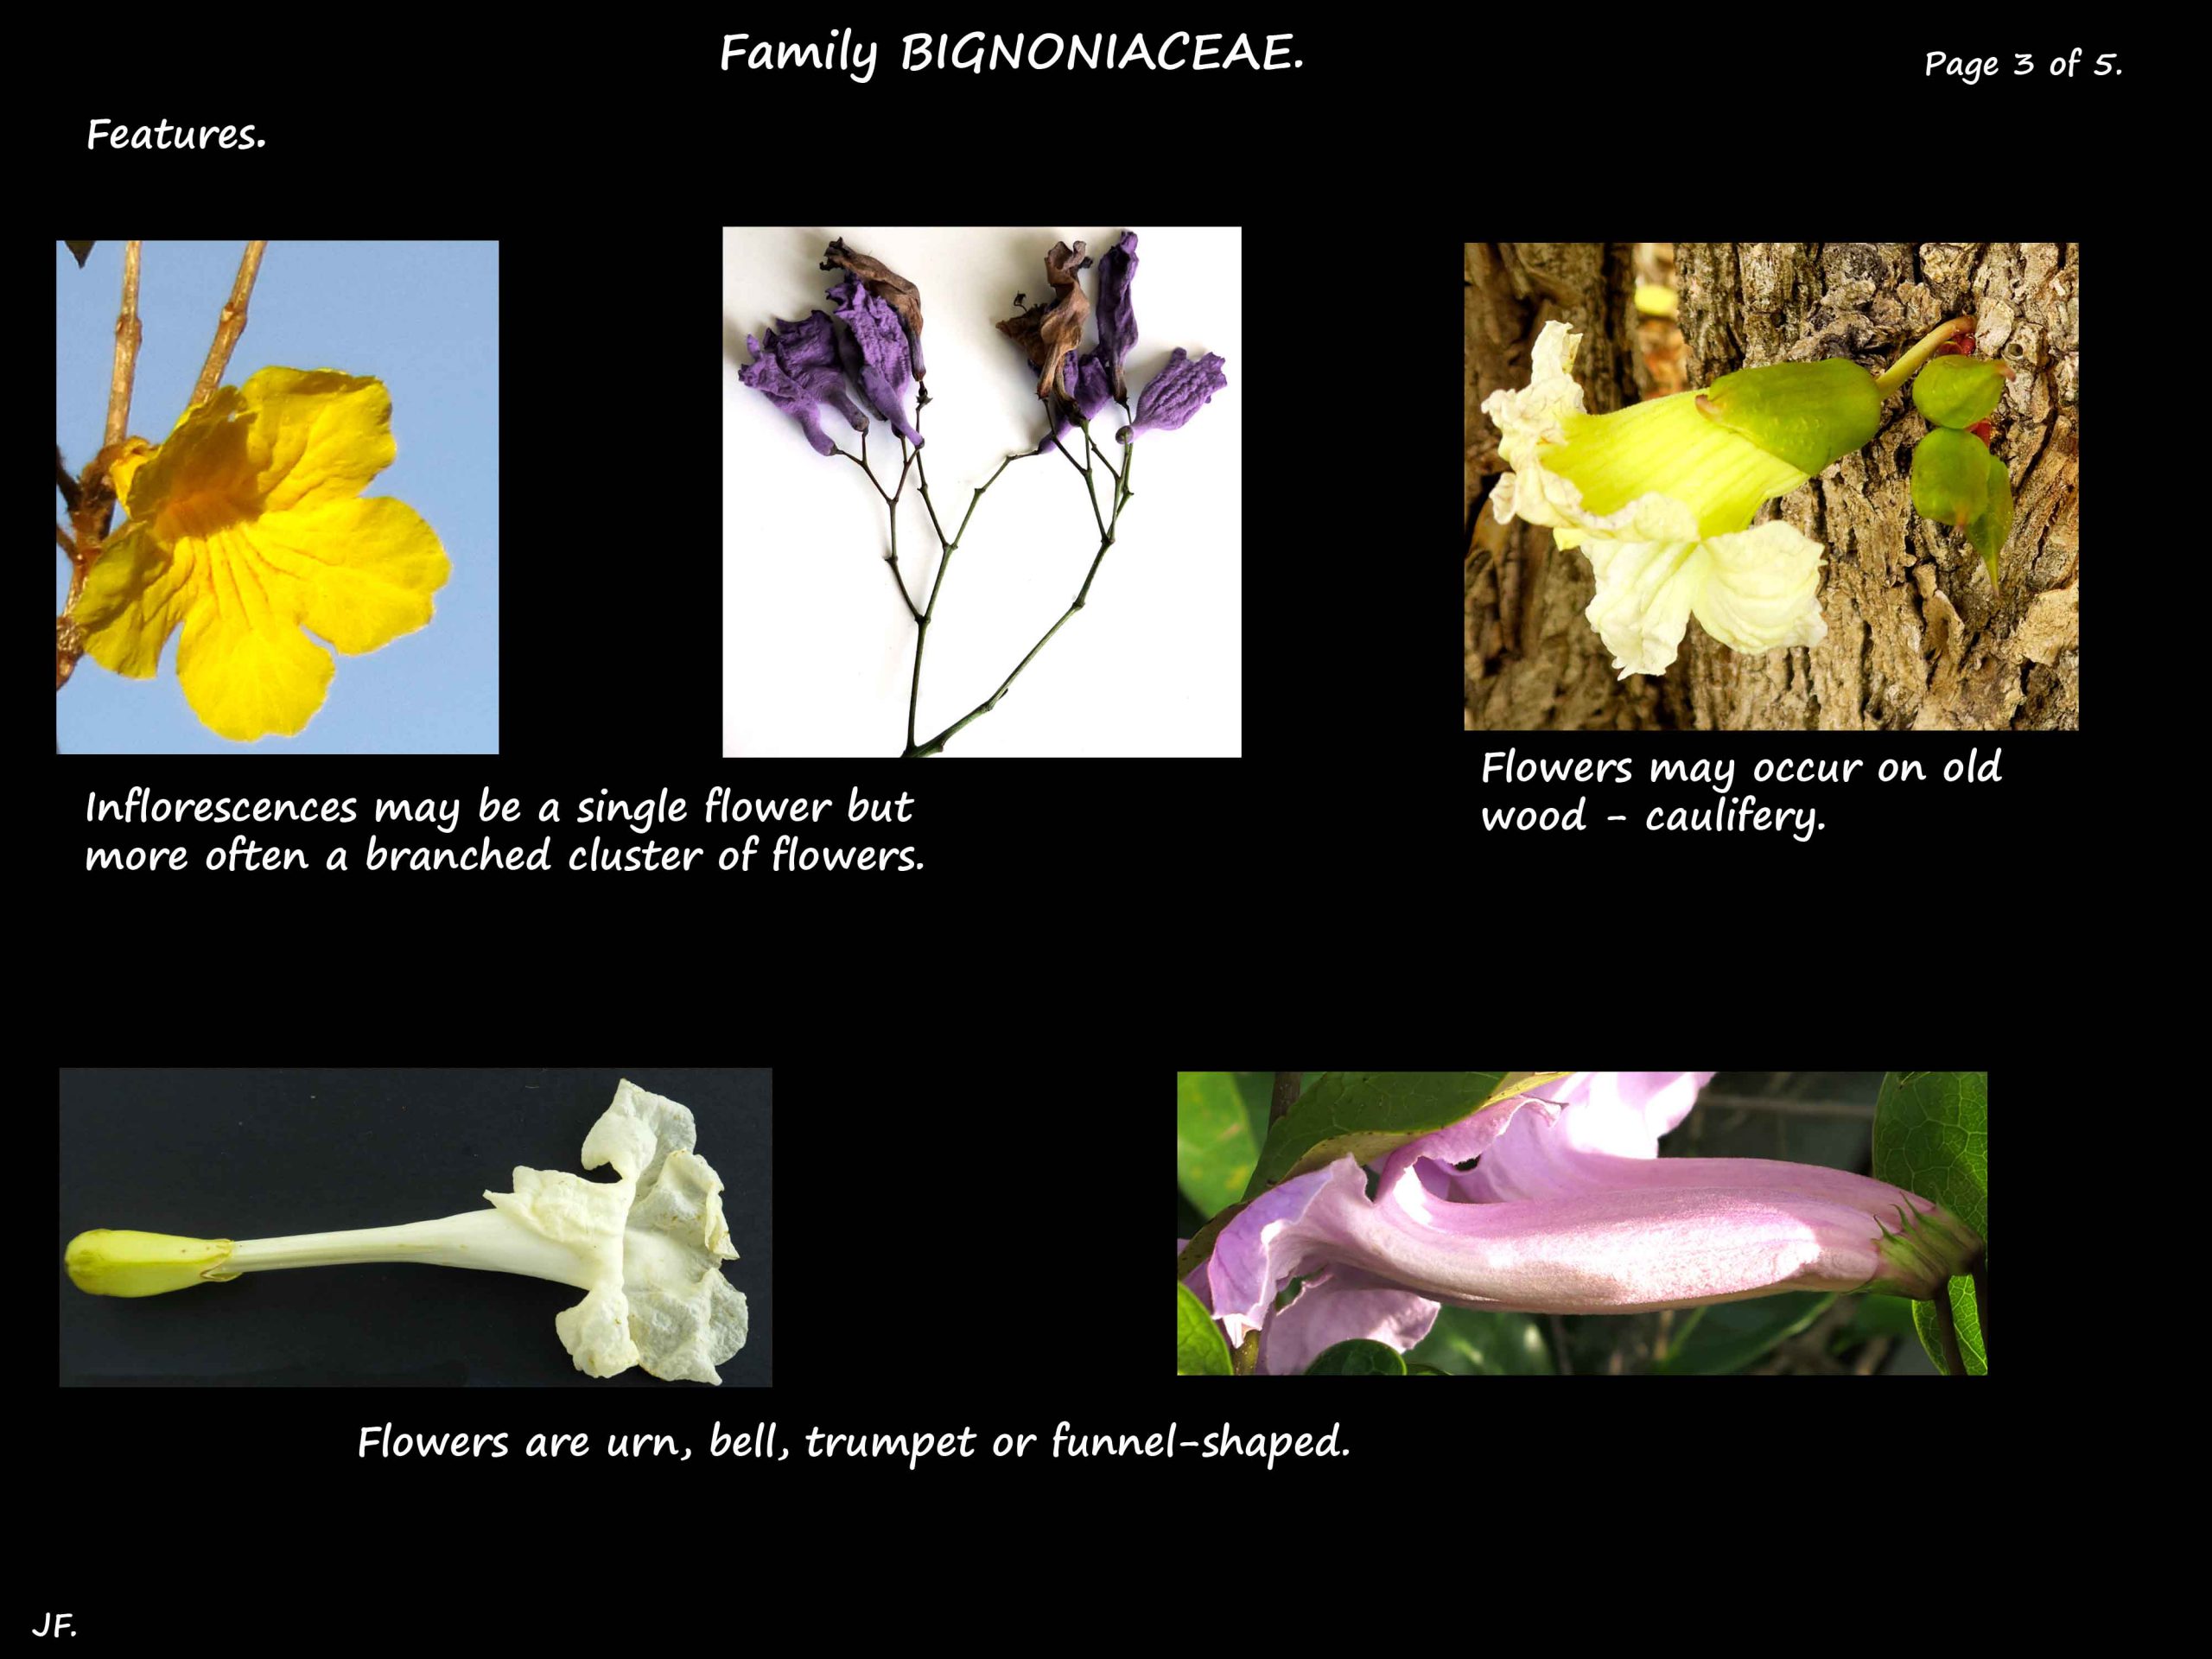 3 Bignoniaceae flowers